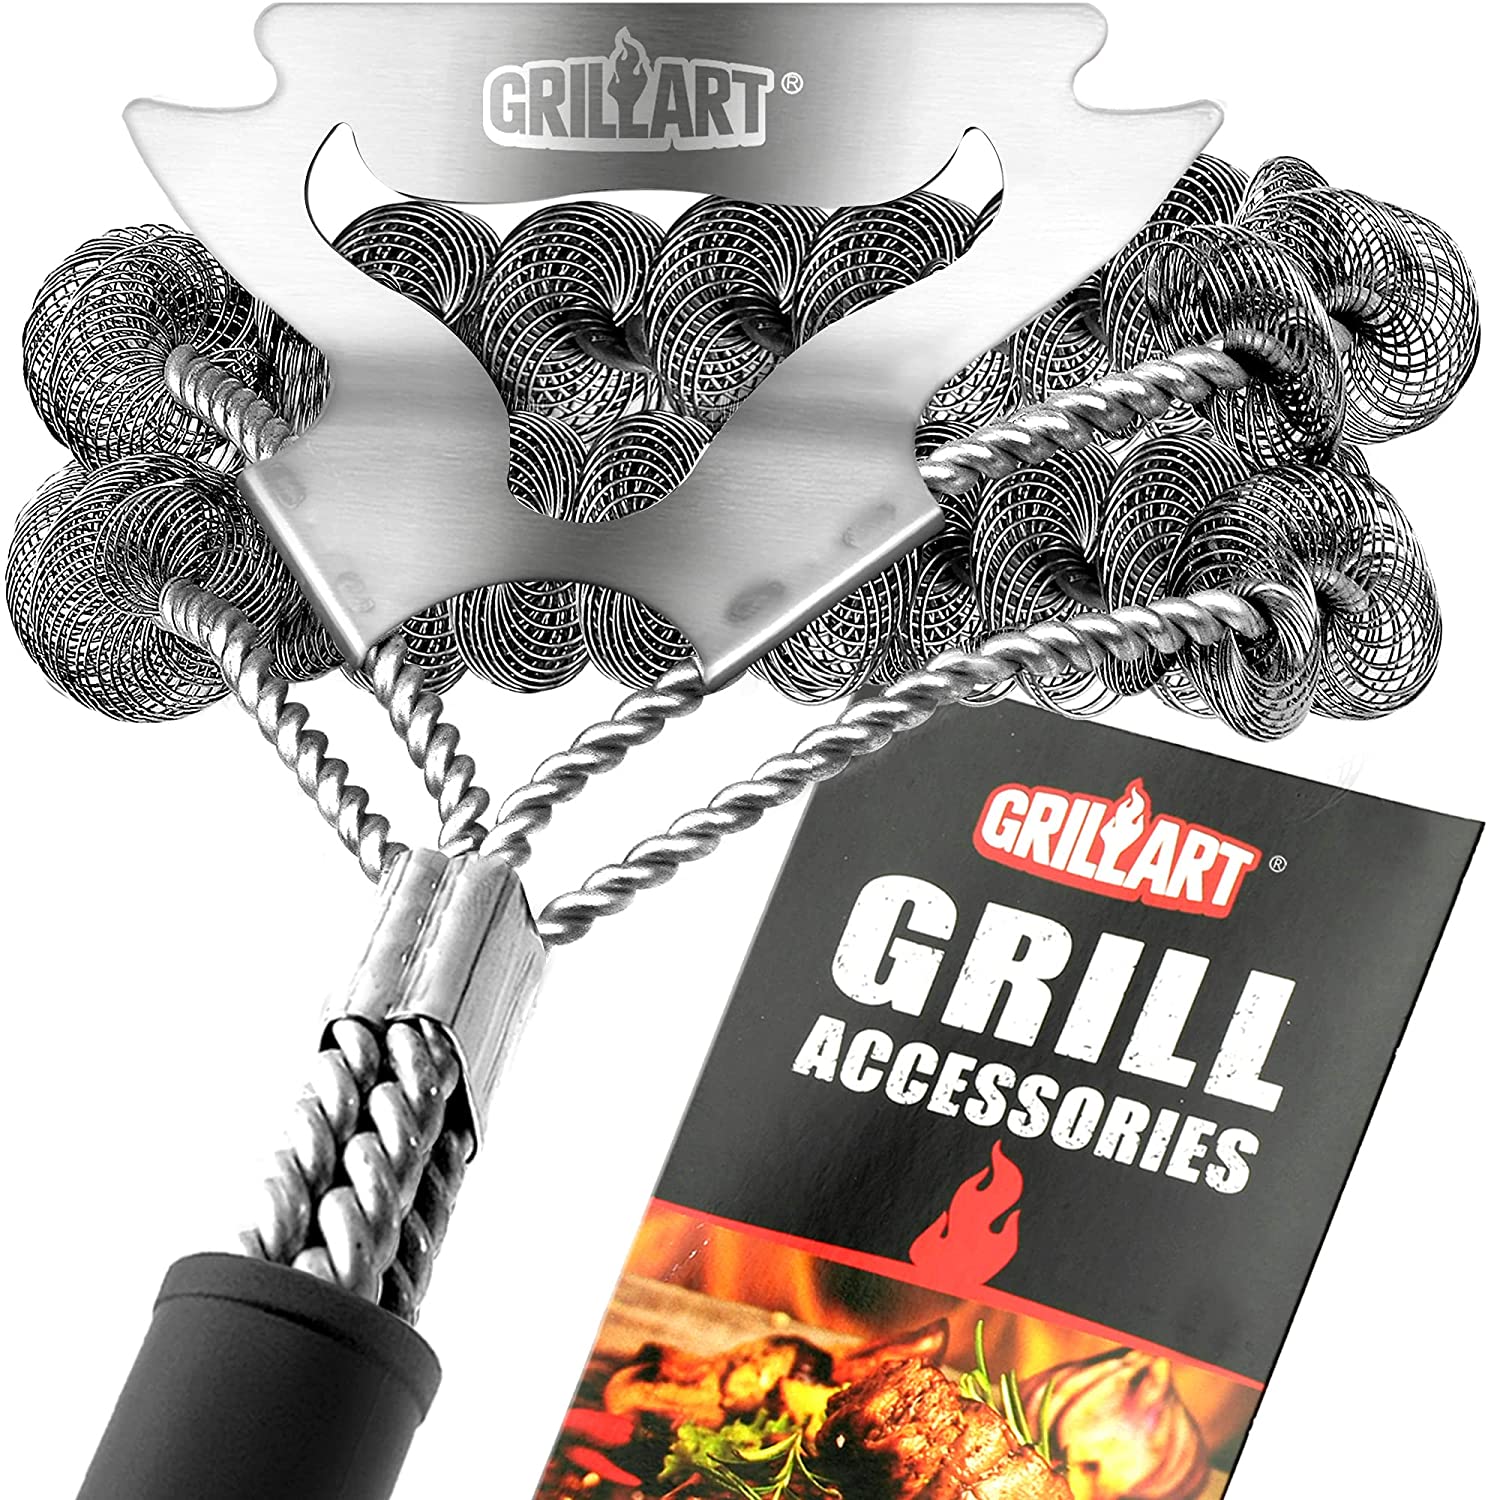 GRILLART Grill Brush and Scraper Bristle Free, 17-Inch Grill